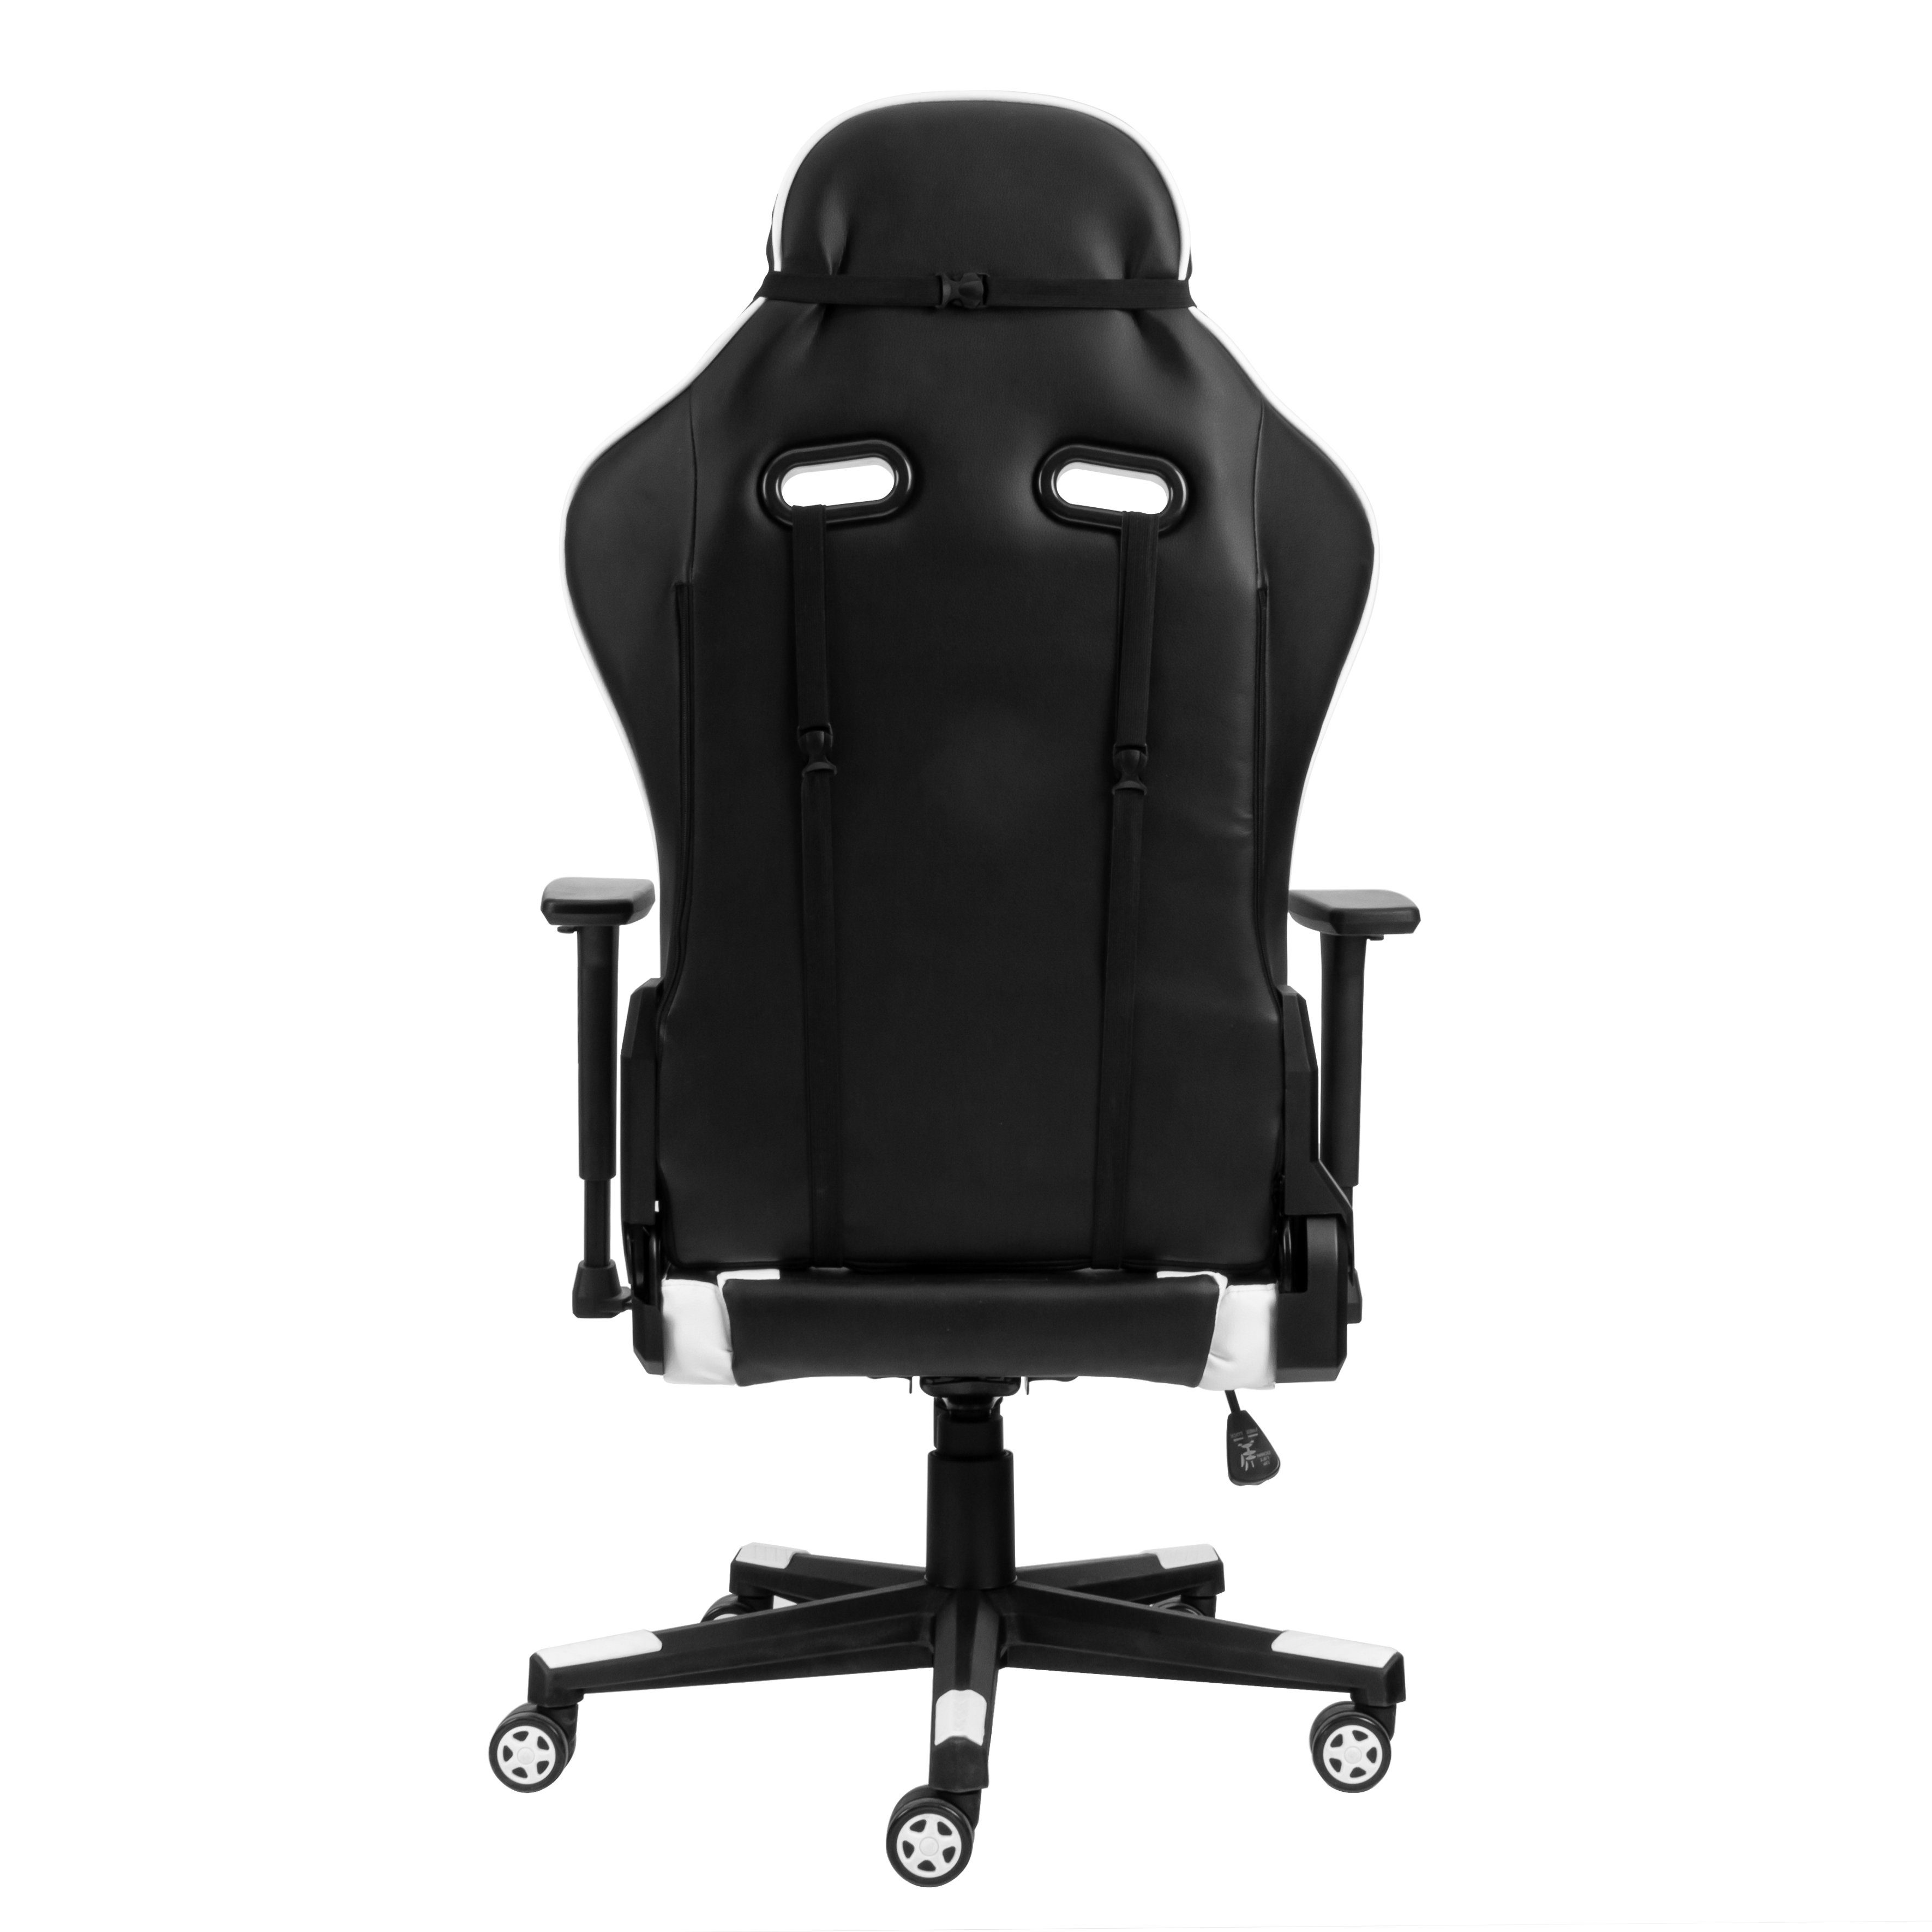 Hyrican Gaming-Stuhl "Striker Tank" schwarz/weiß, Kunstleder, ergonomischer Gamingstuhl, Bürostuhl, Schreibtischstuhl, geeignet für Erwachsene